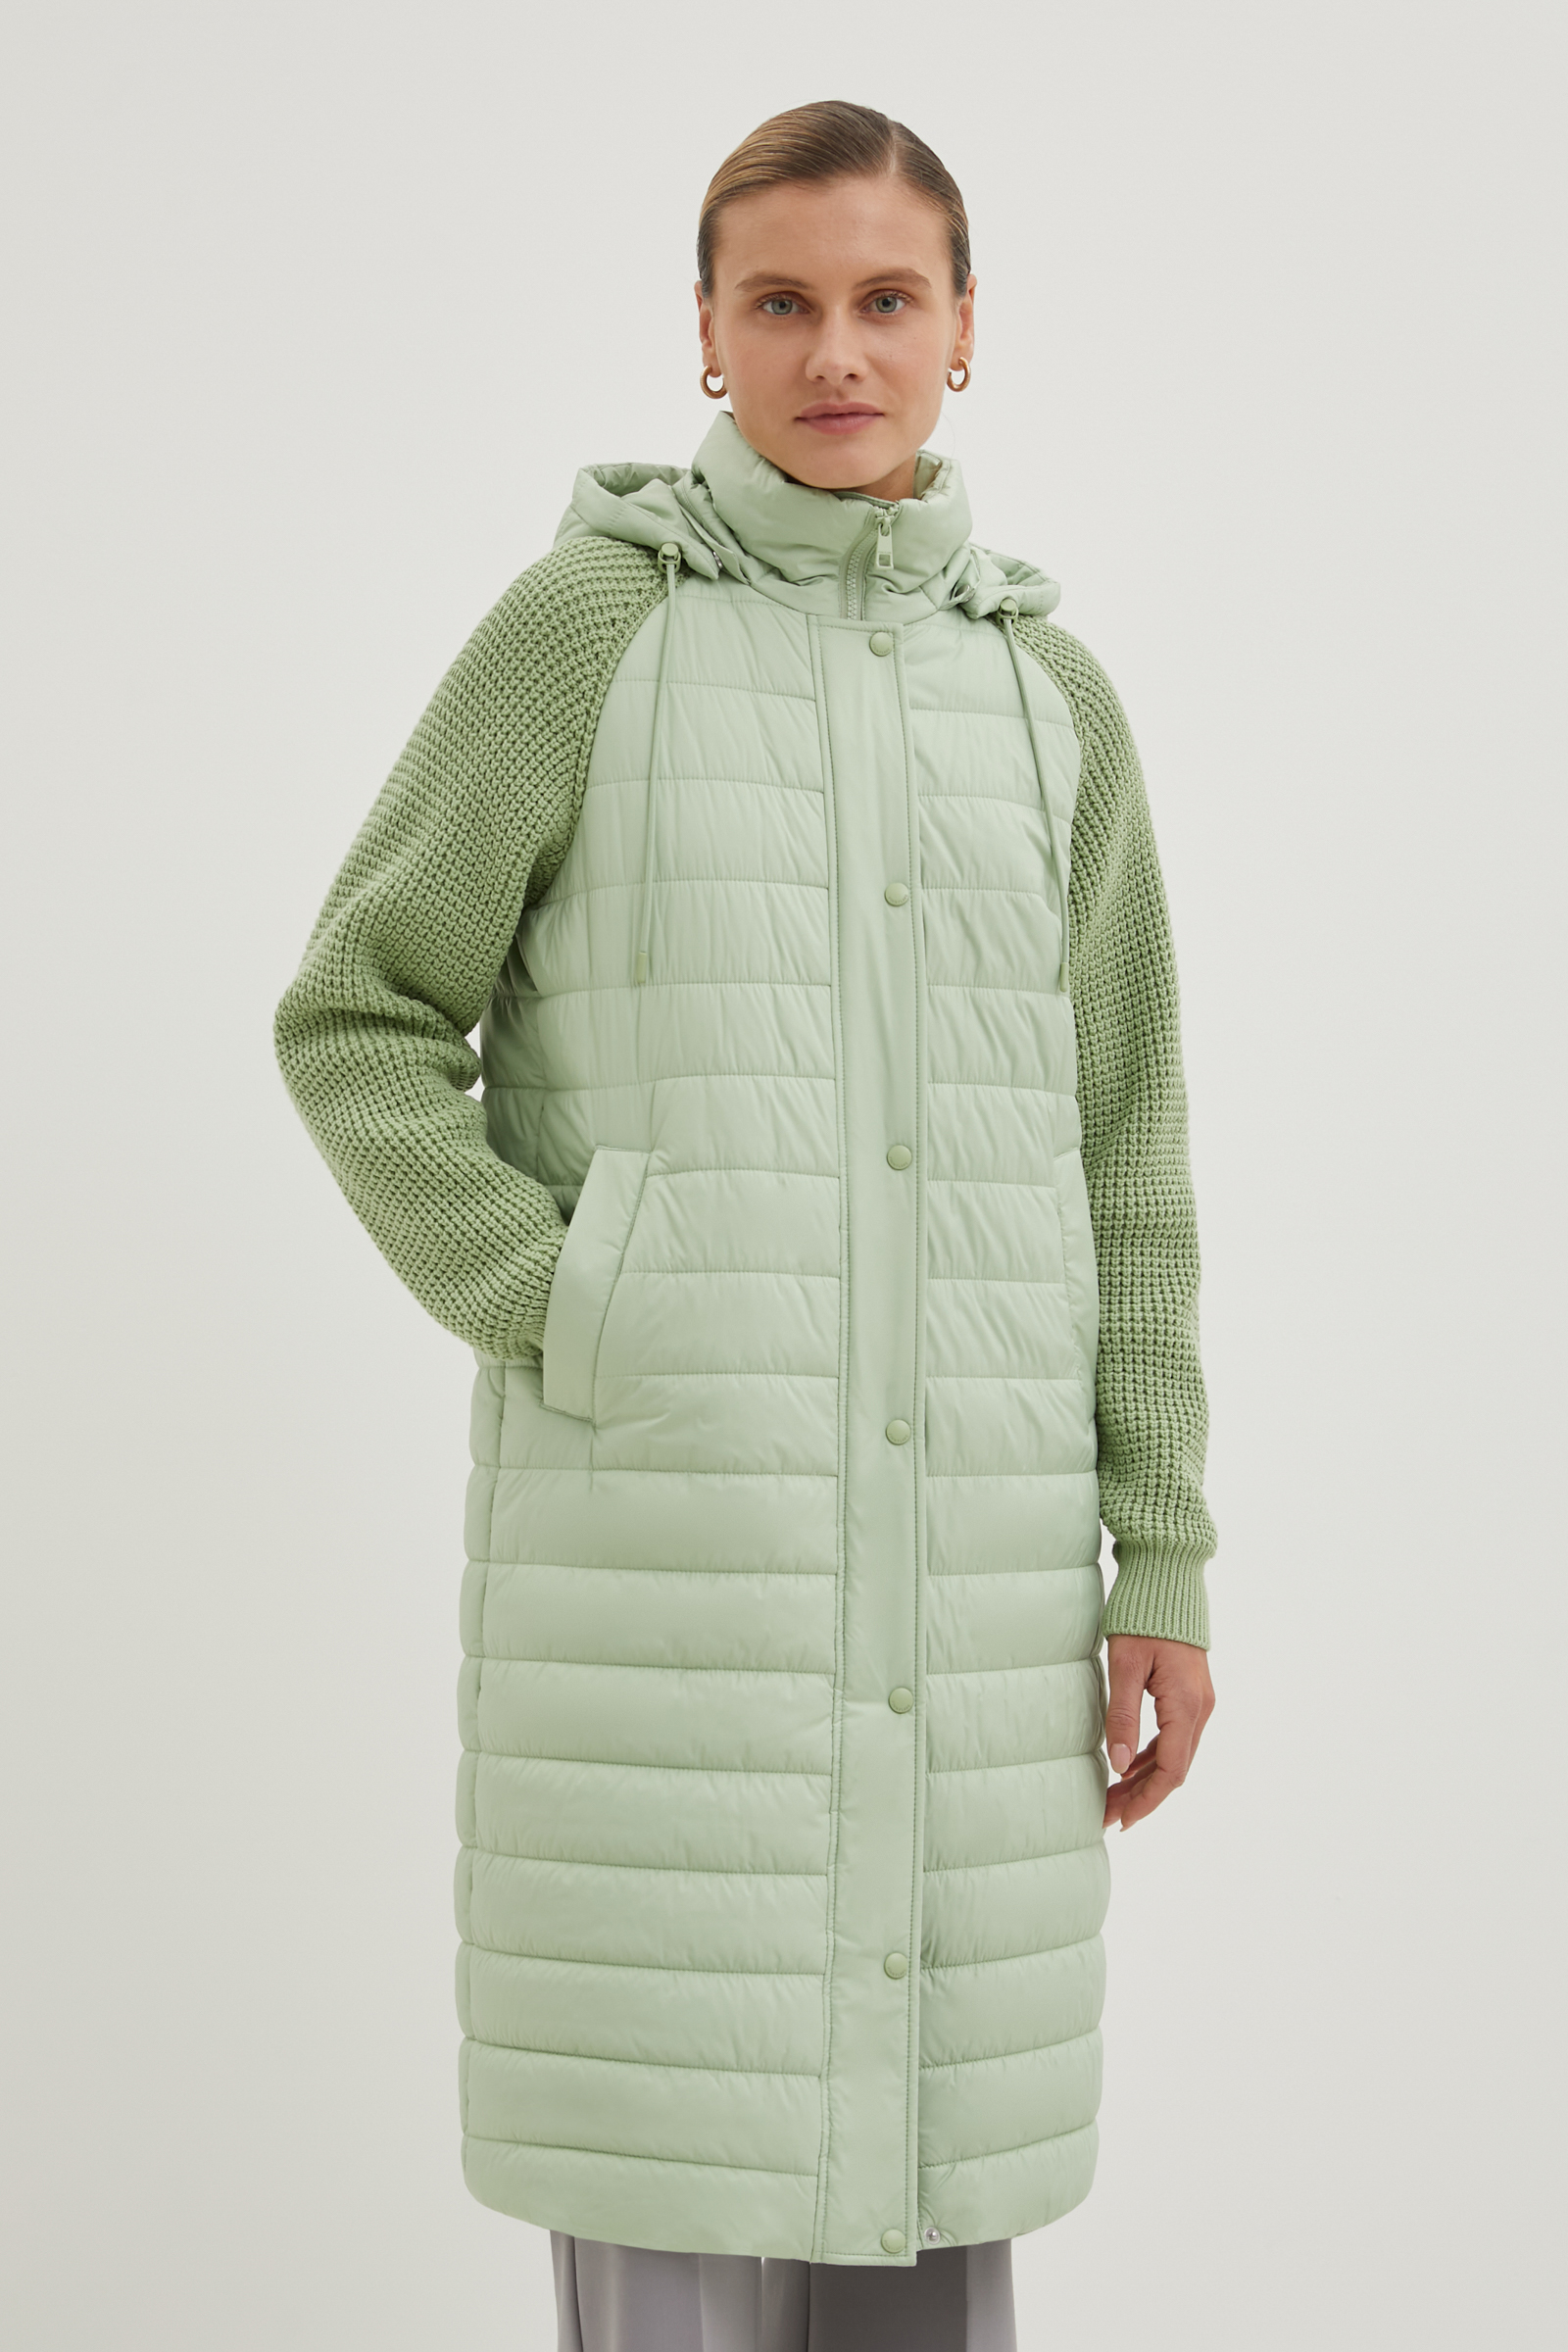 Пальто женское Finn Flare FBE110207 зеленое XL